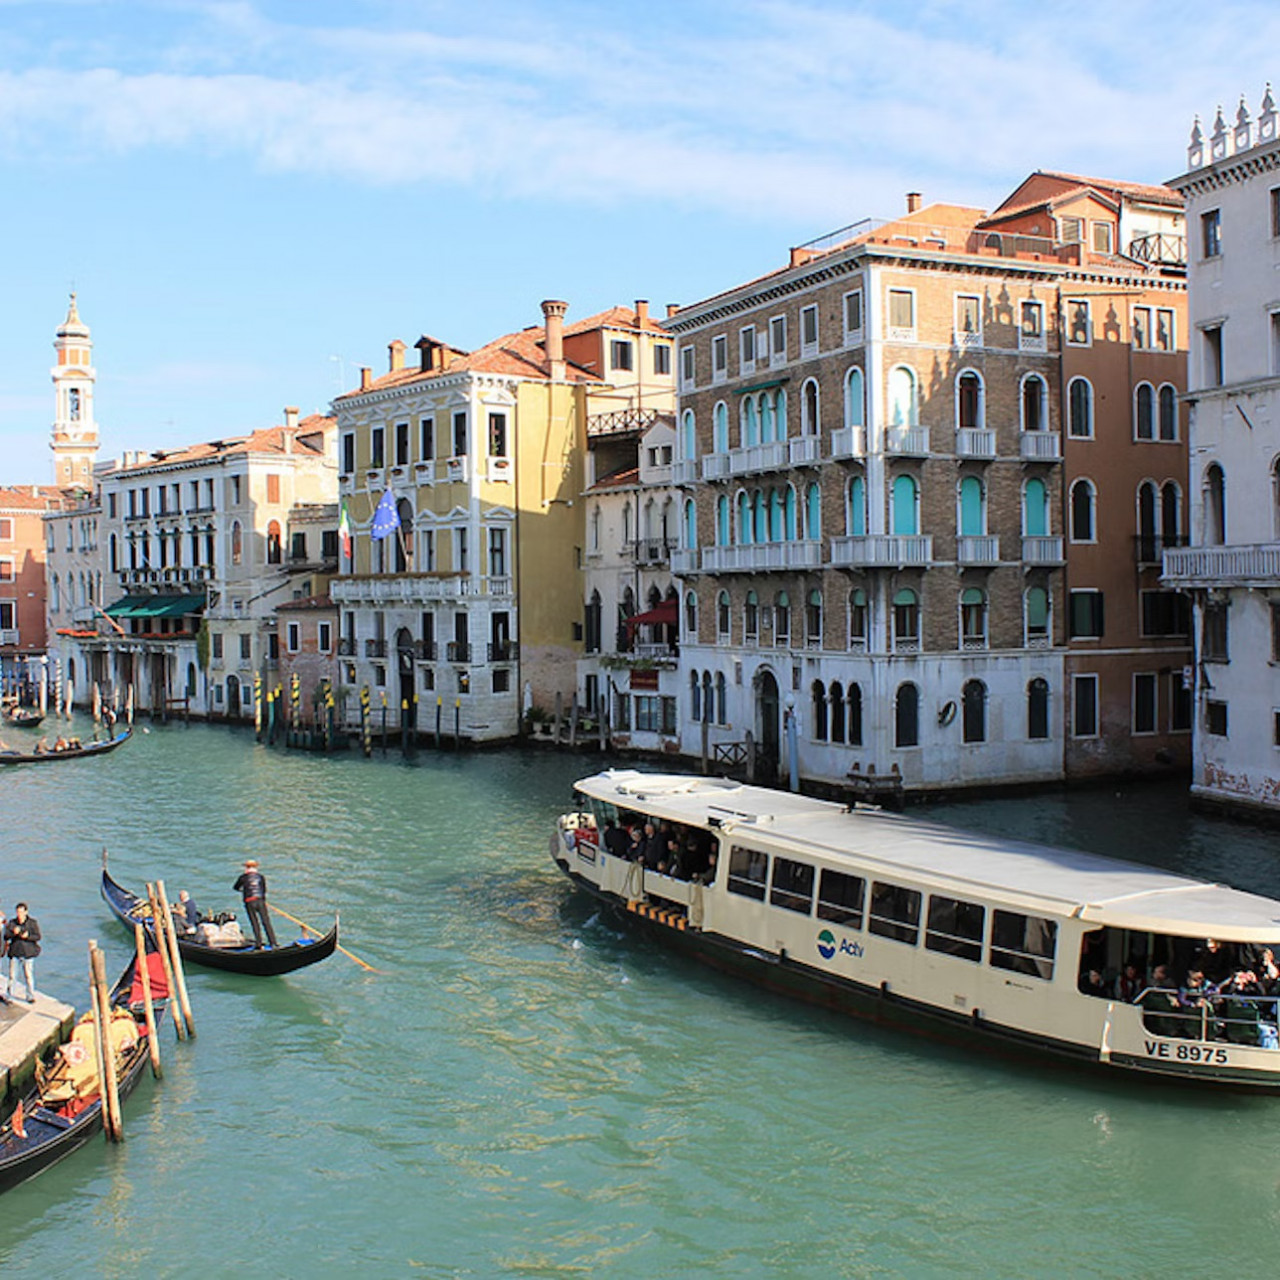 Public Transportation in Venice: The Vaporetto